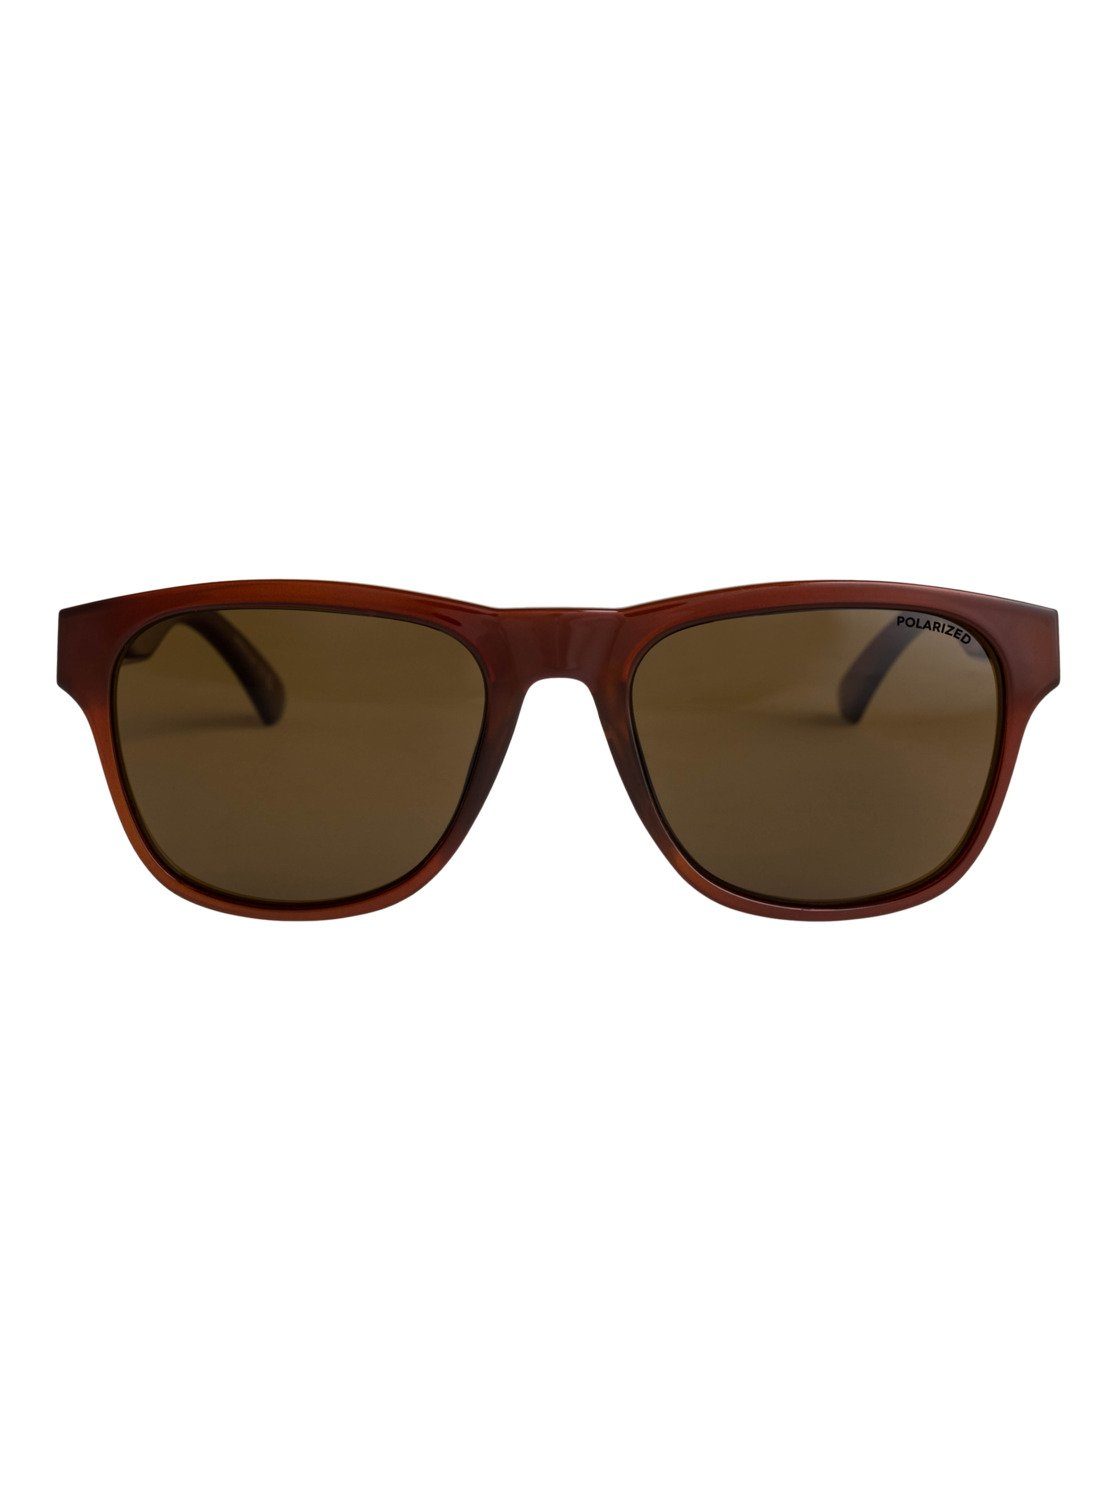 Sonnenbrille Plz Polarized Tagger Quiksilver Stone/Brown